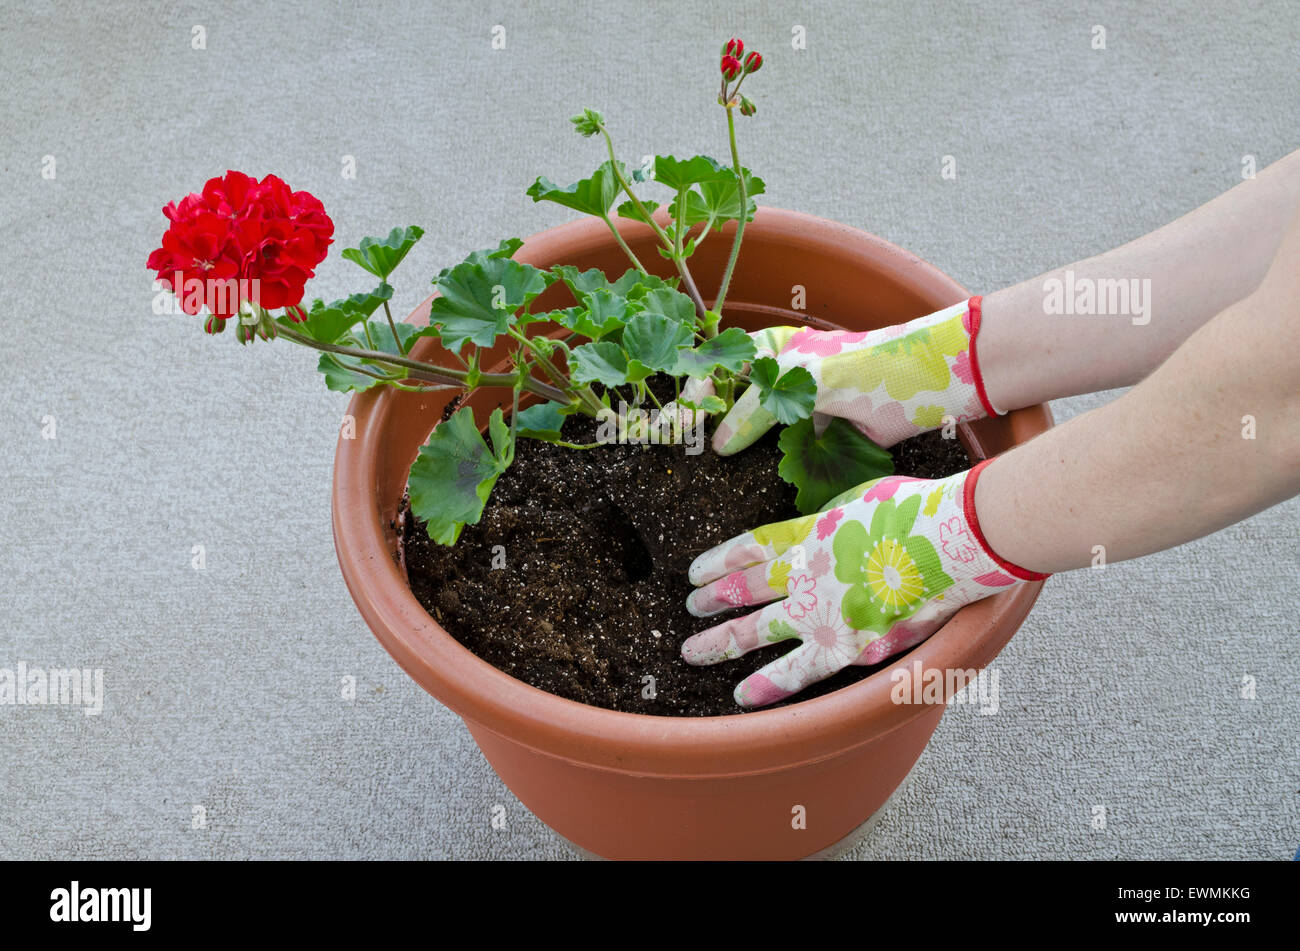 Récipient jardinage, terreau d'une plante - Étape 5 de 7 : plantation de fleurs (géraniums) dans le terreau et couvrant jusqu'aux racines. Parution du modèle. Banque D'Images